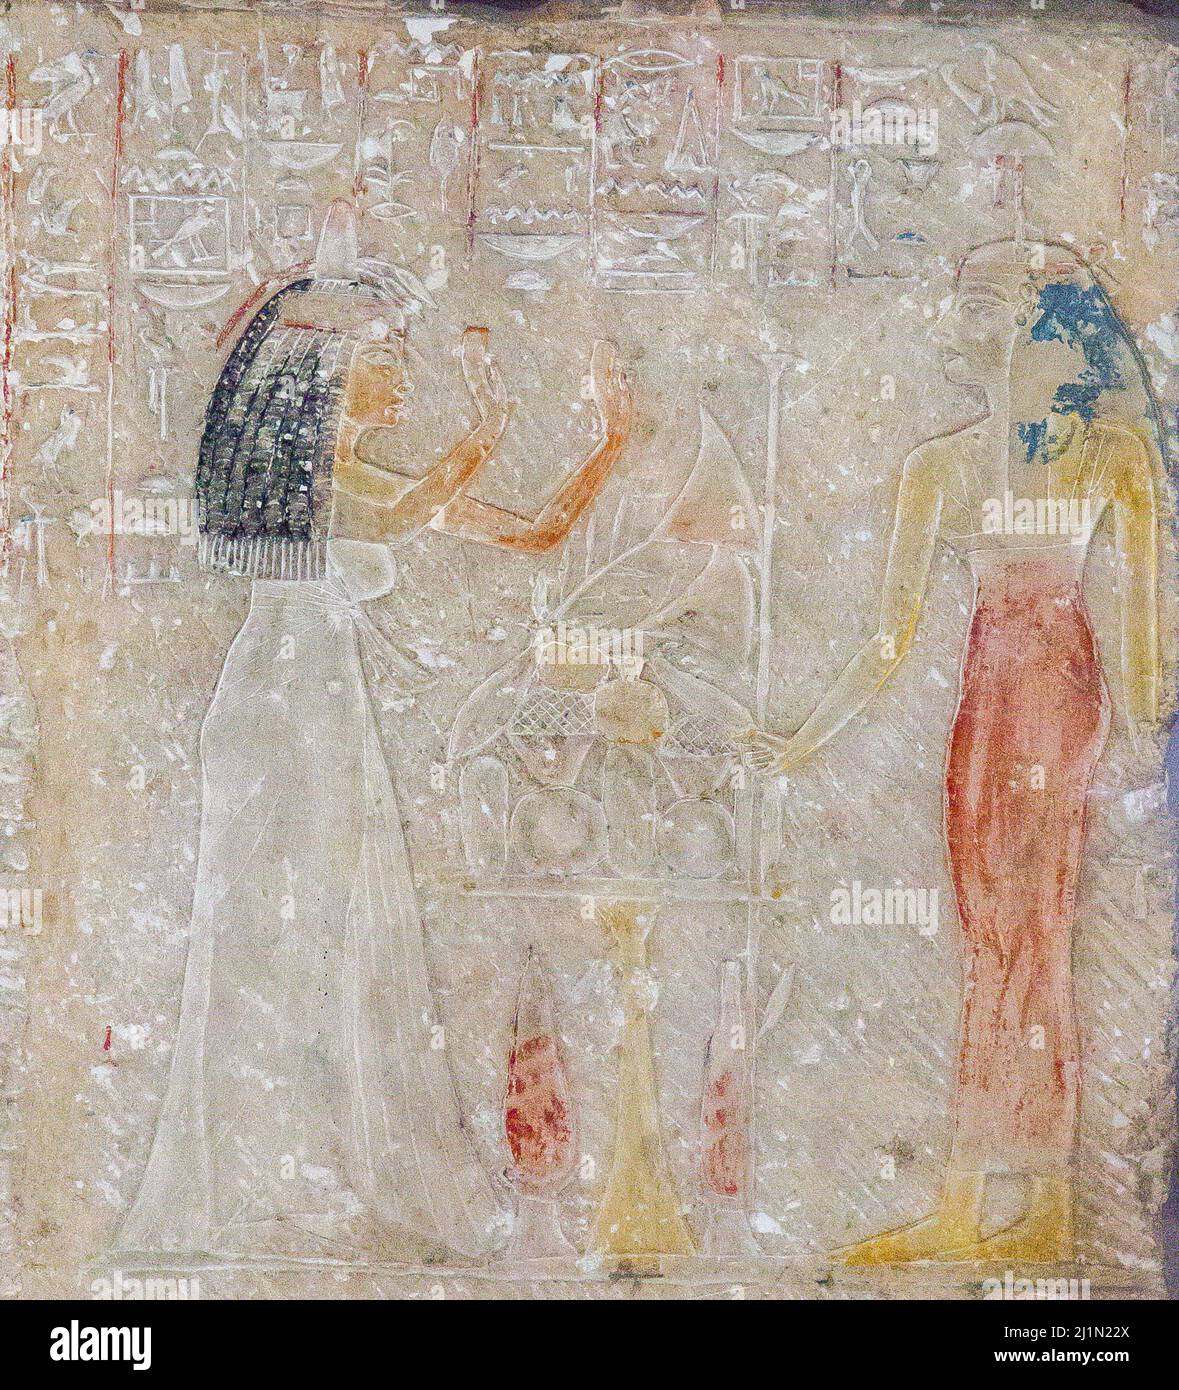 El Cairo, Museo Egipcio, relieve de Merya y Sitti, encontrado en Saqqara : Sitti adoring Hathor. El bloque fue reutilizado como pavimento en otra tumba. Foto de stock